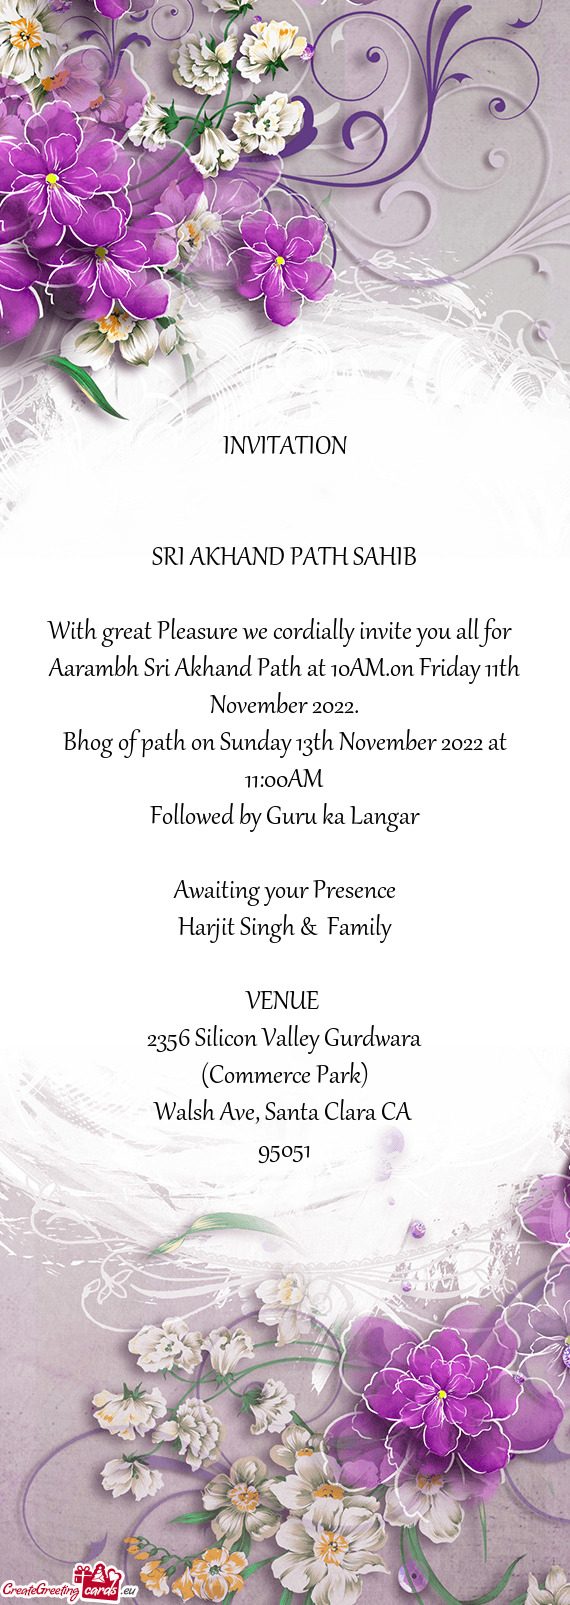 Aarambh Sri Akhand Path at 10AM.on Friday 11th November 2022